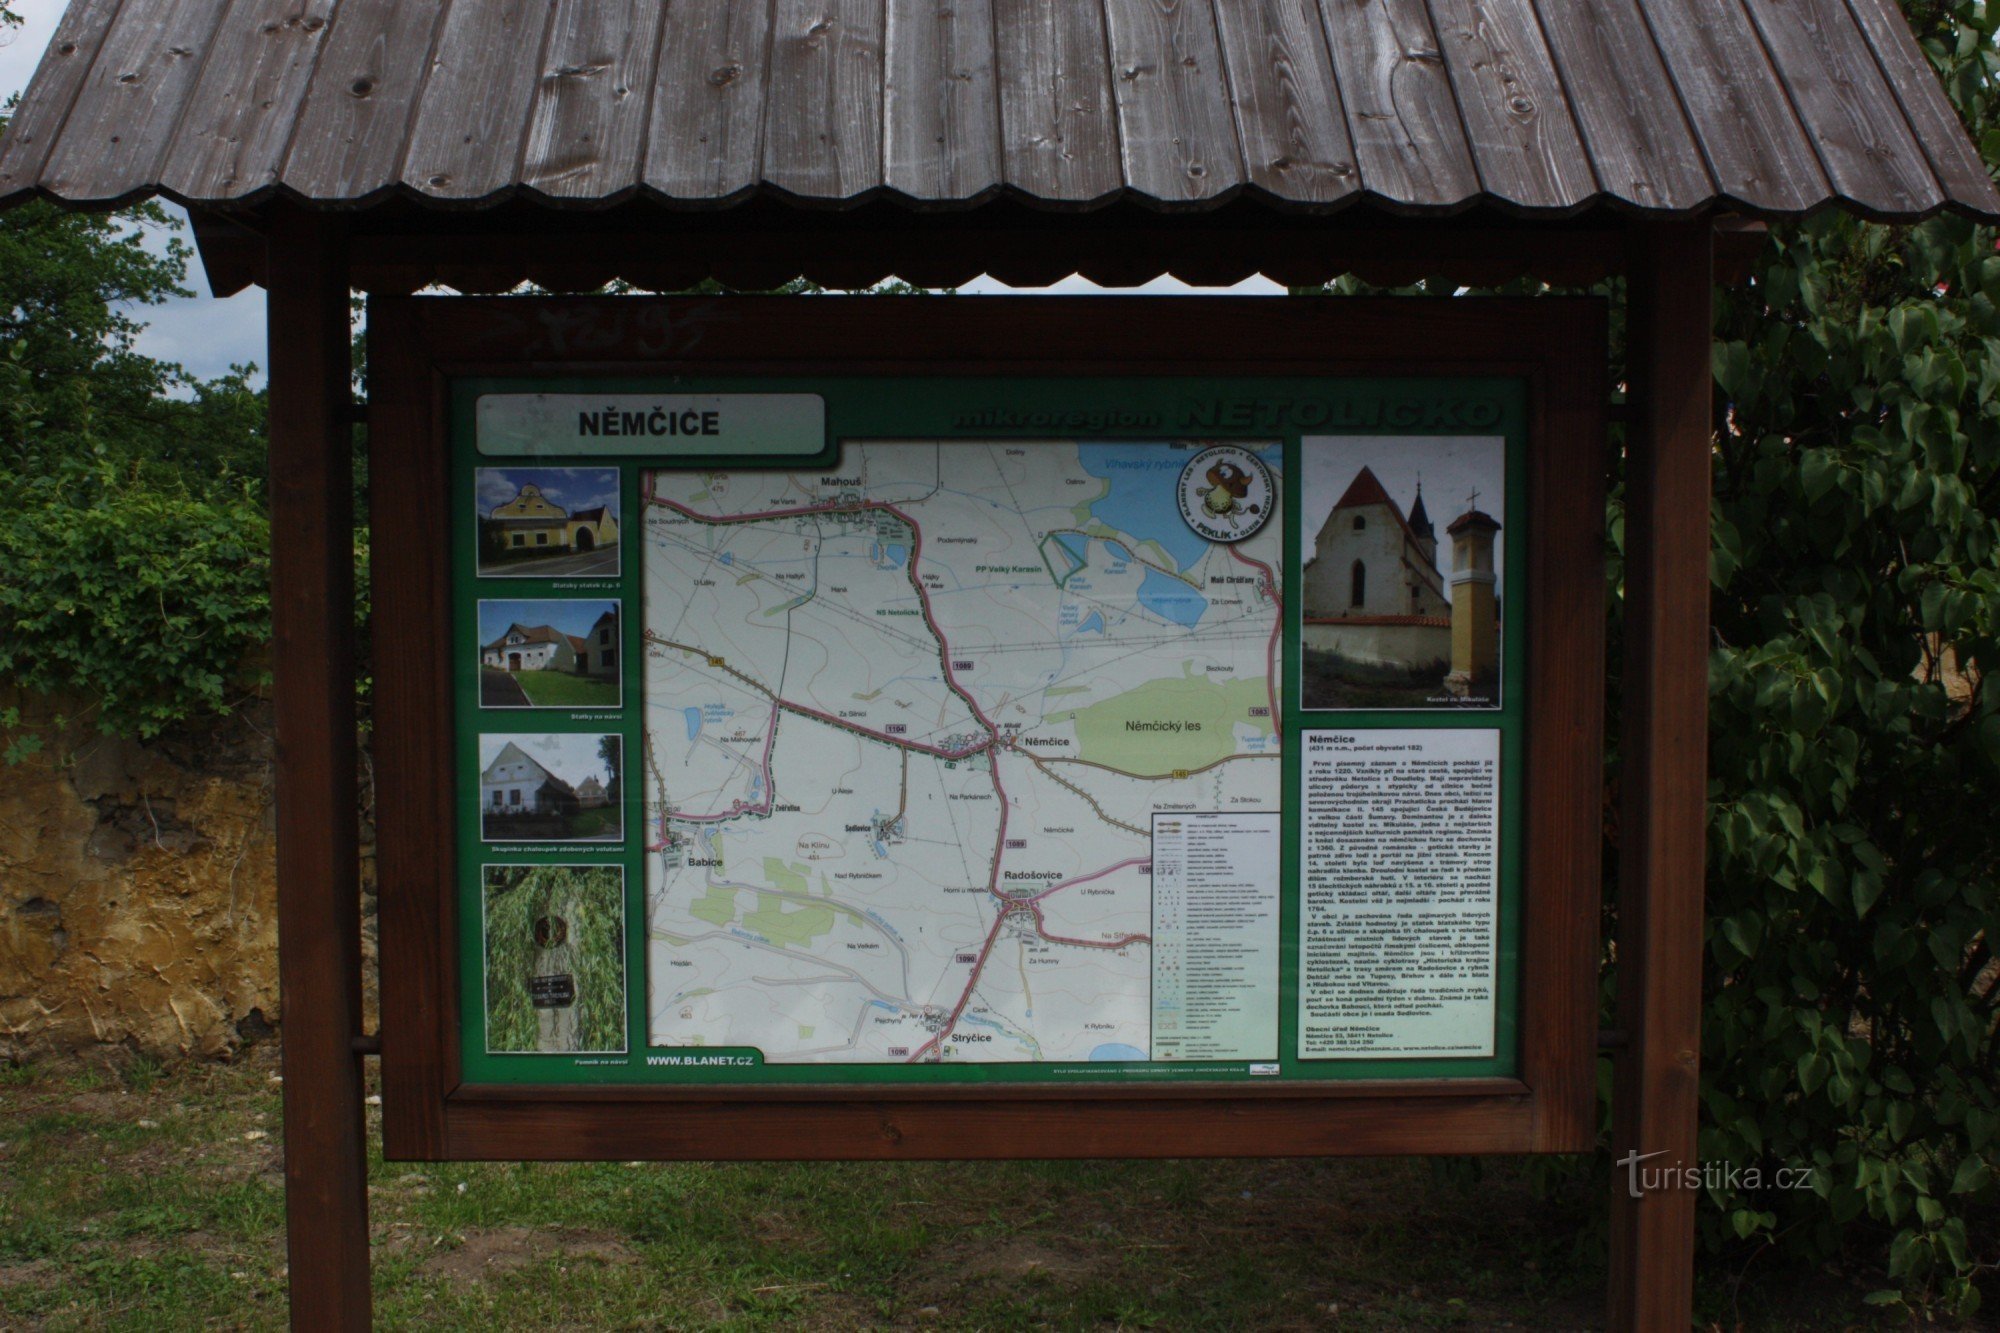 Turisztikai információs tábla Němčicében, Netolice közelében